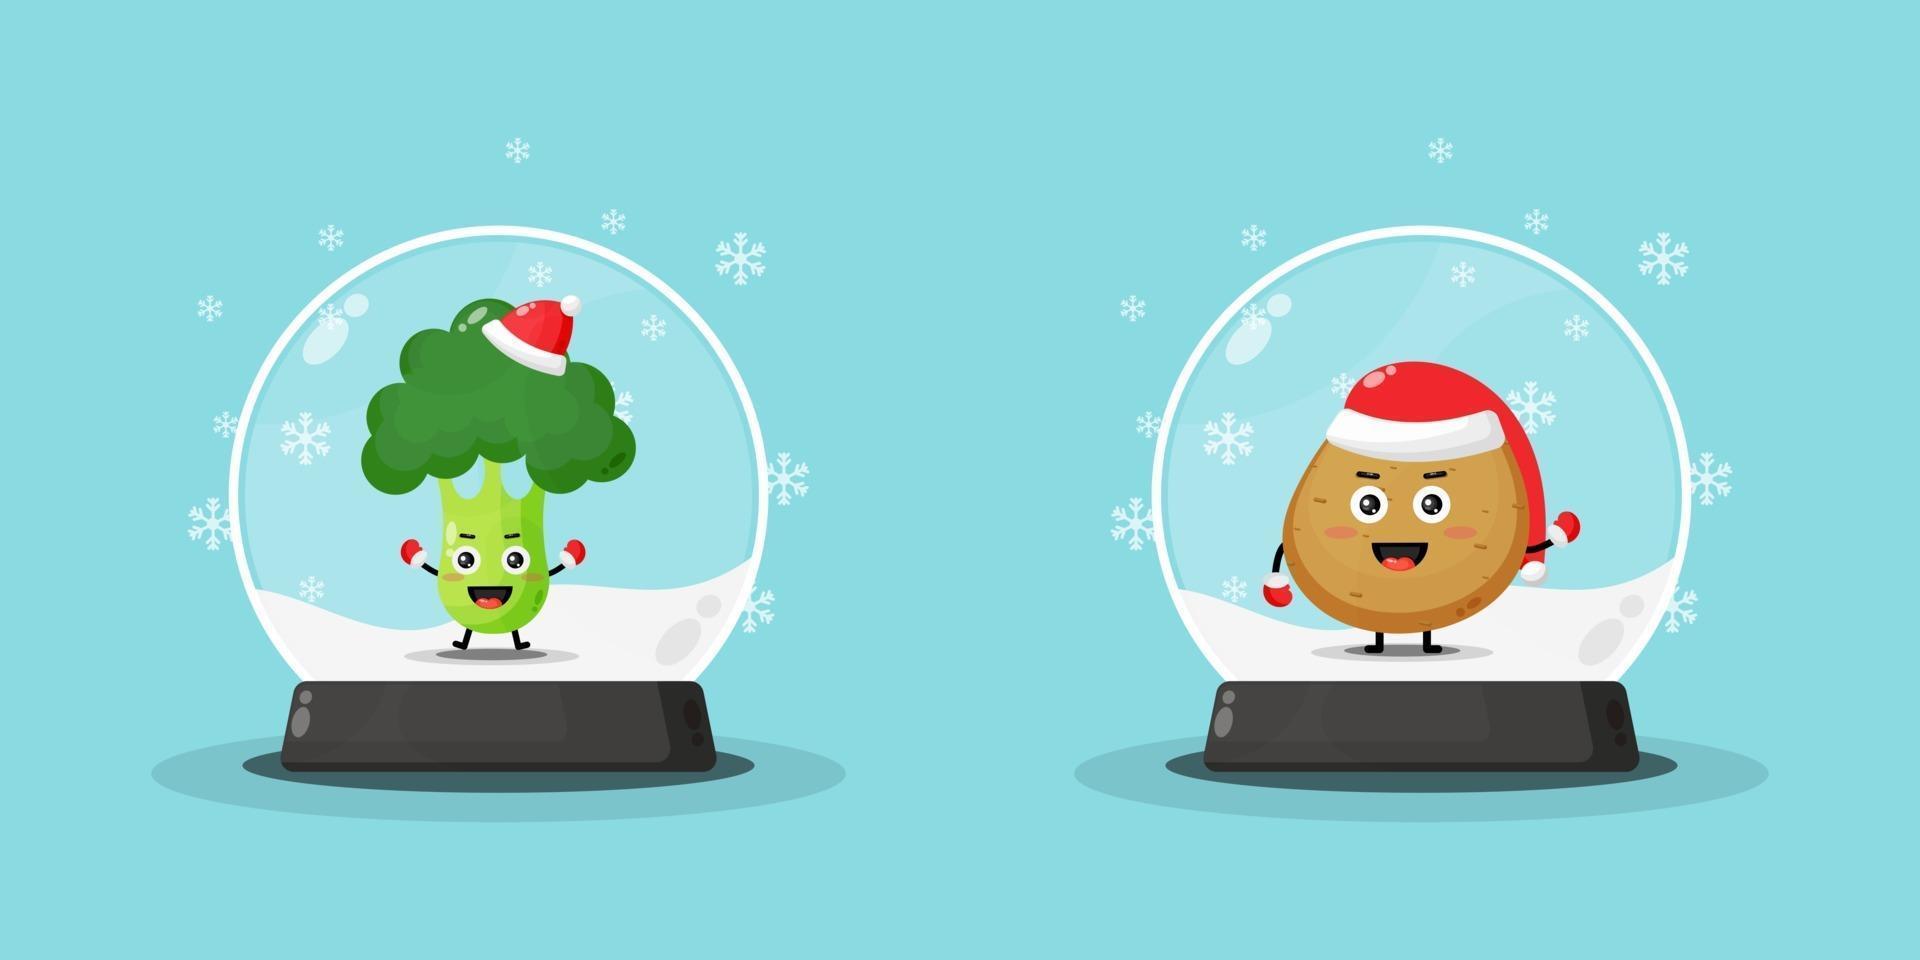 Cute broccoli and potato mascot on a snowglobe vector